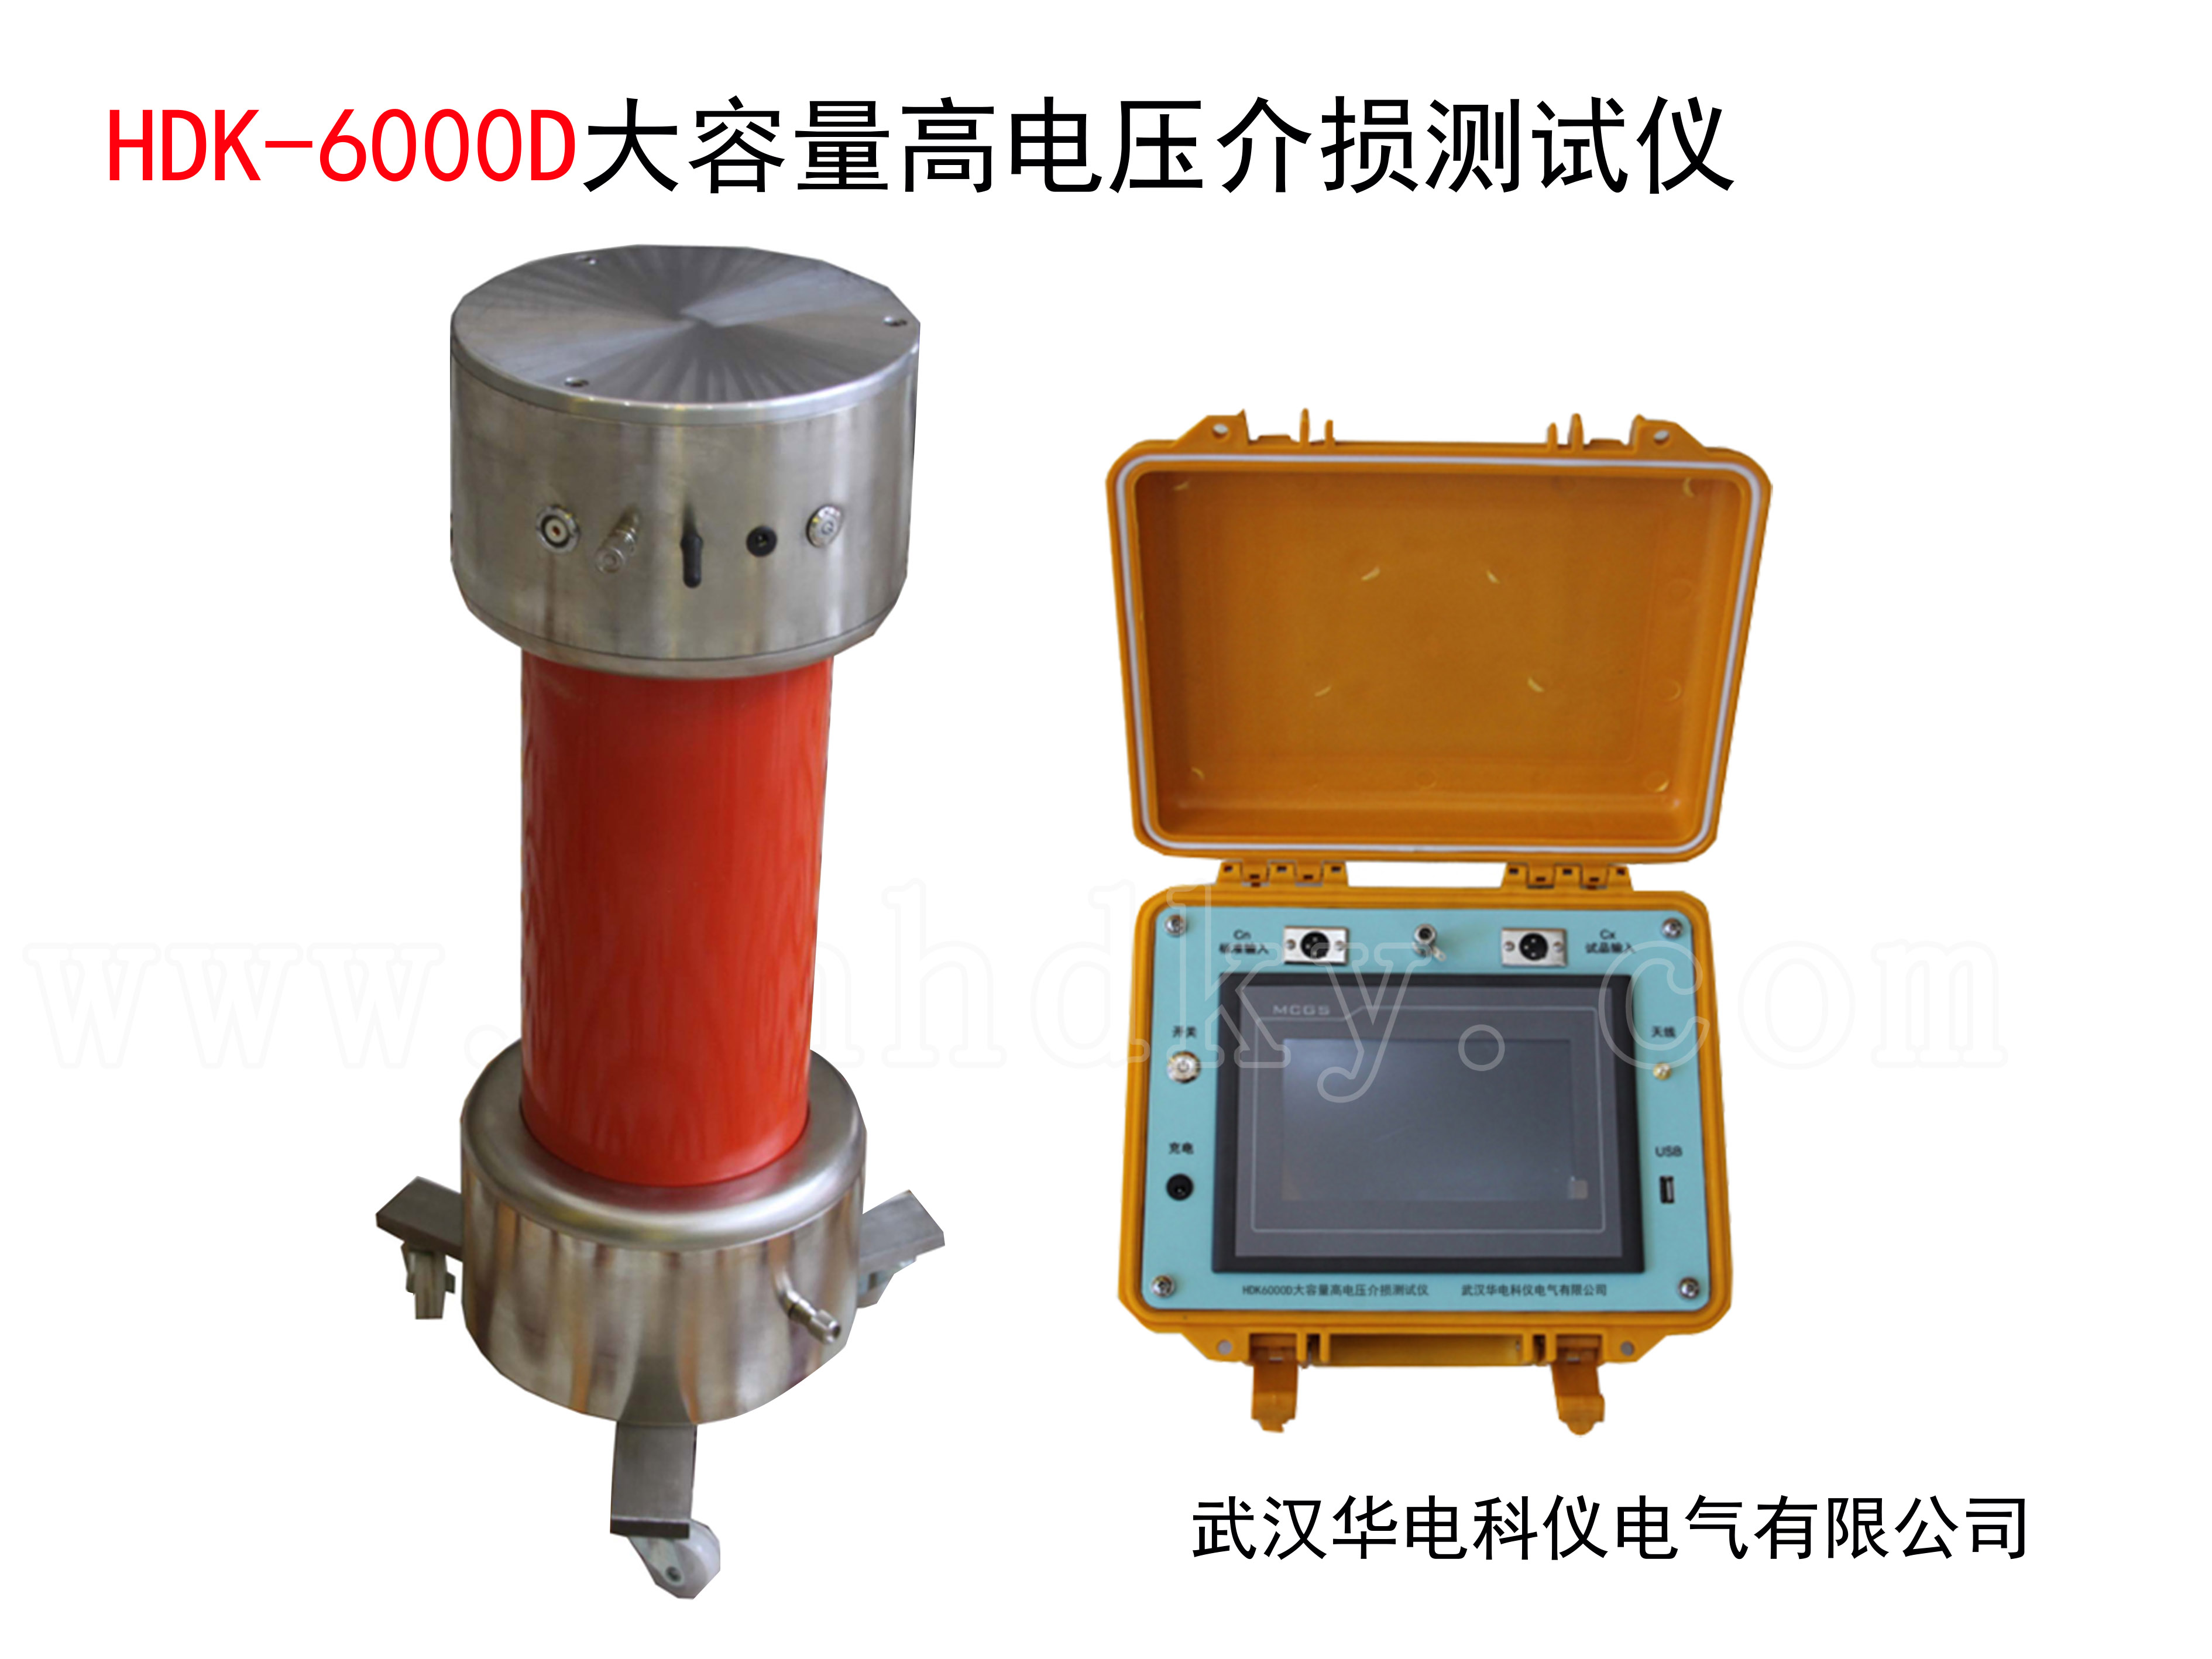 HDK-6000D大容量高电压介损测试仪